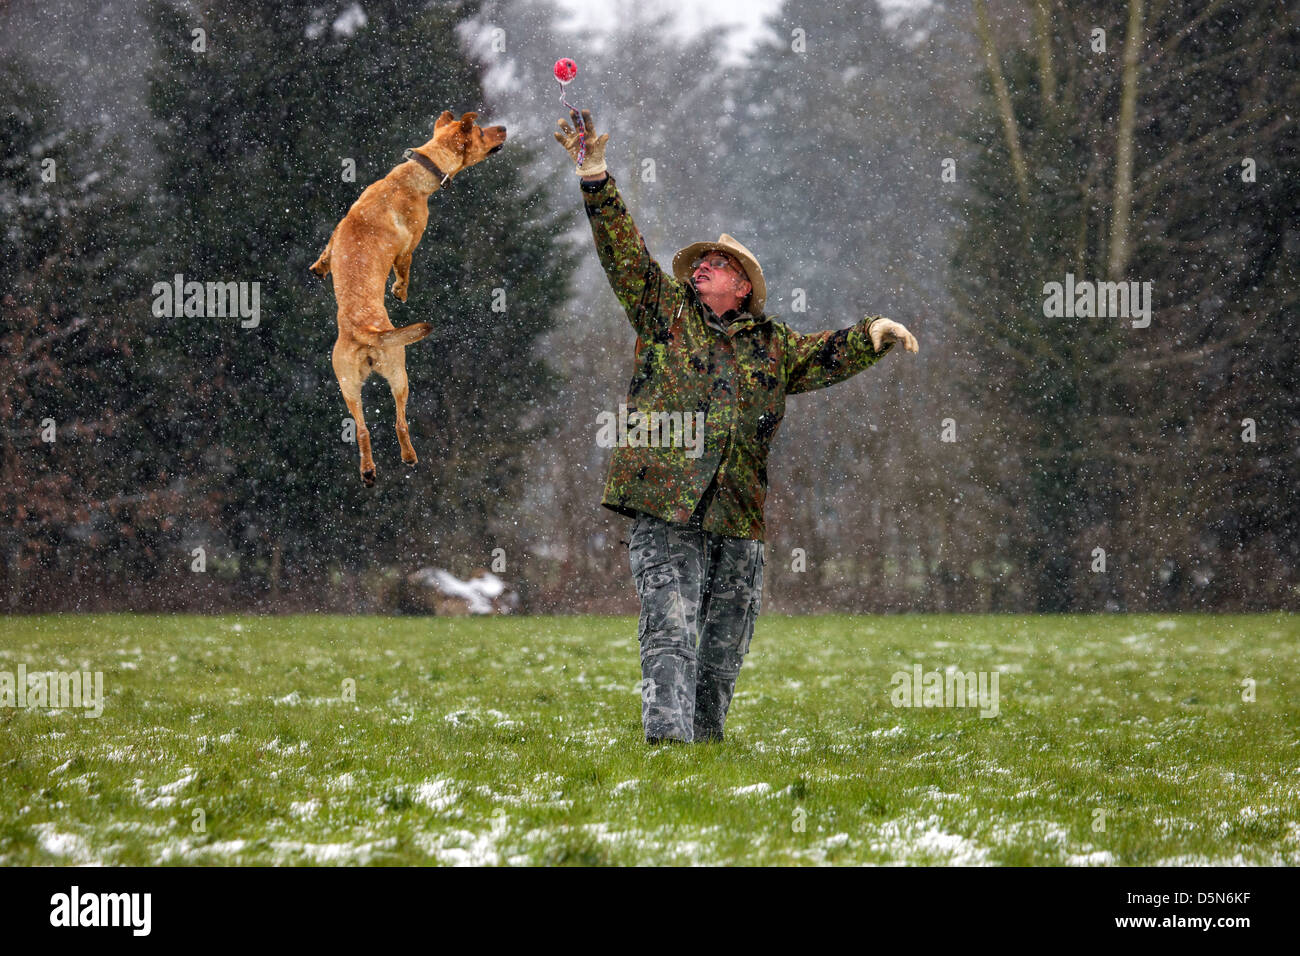 Mixed-razza cane (Labrador - Belga cane pastore / Malinois) proprietario e gioca con la palla di neve in inverno Foto Stock